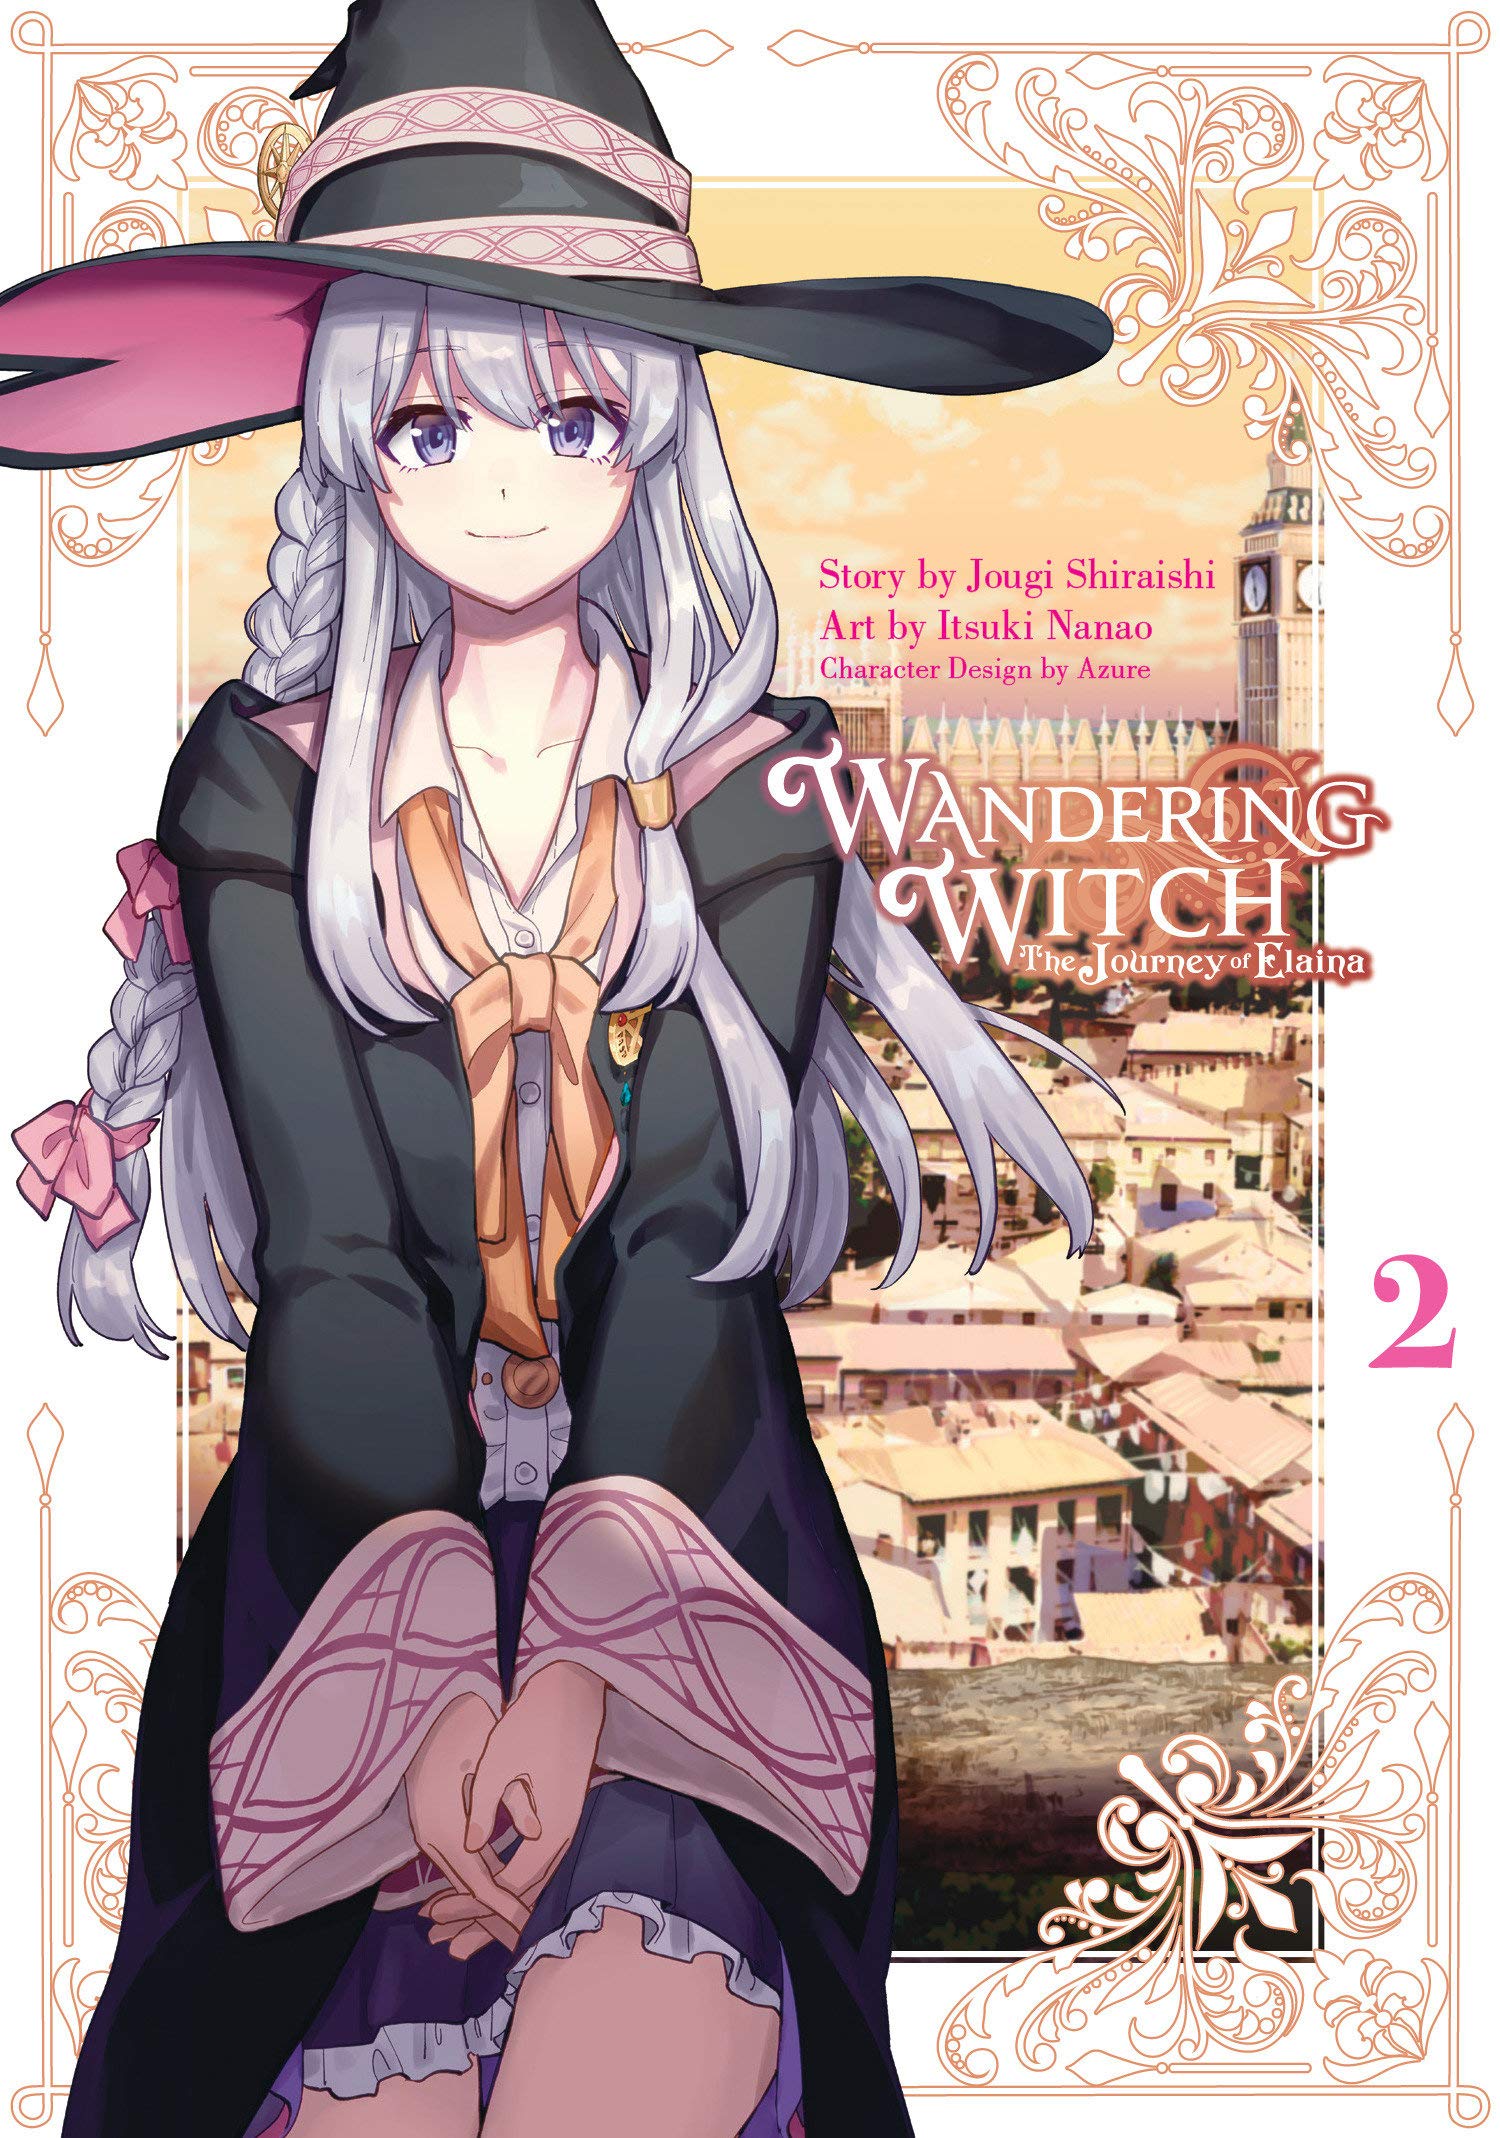 Wandering Witch (Manga) 02: The Journey of Elaina: Amazon.ca: Shiraishi, Jougi, Nanao, Itsuki, Azure: Books